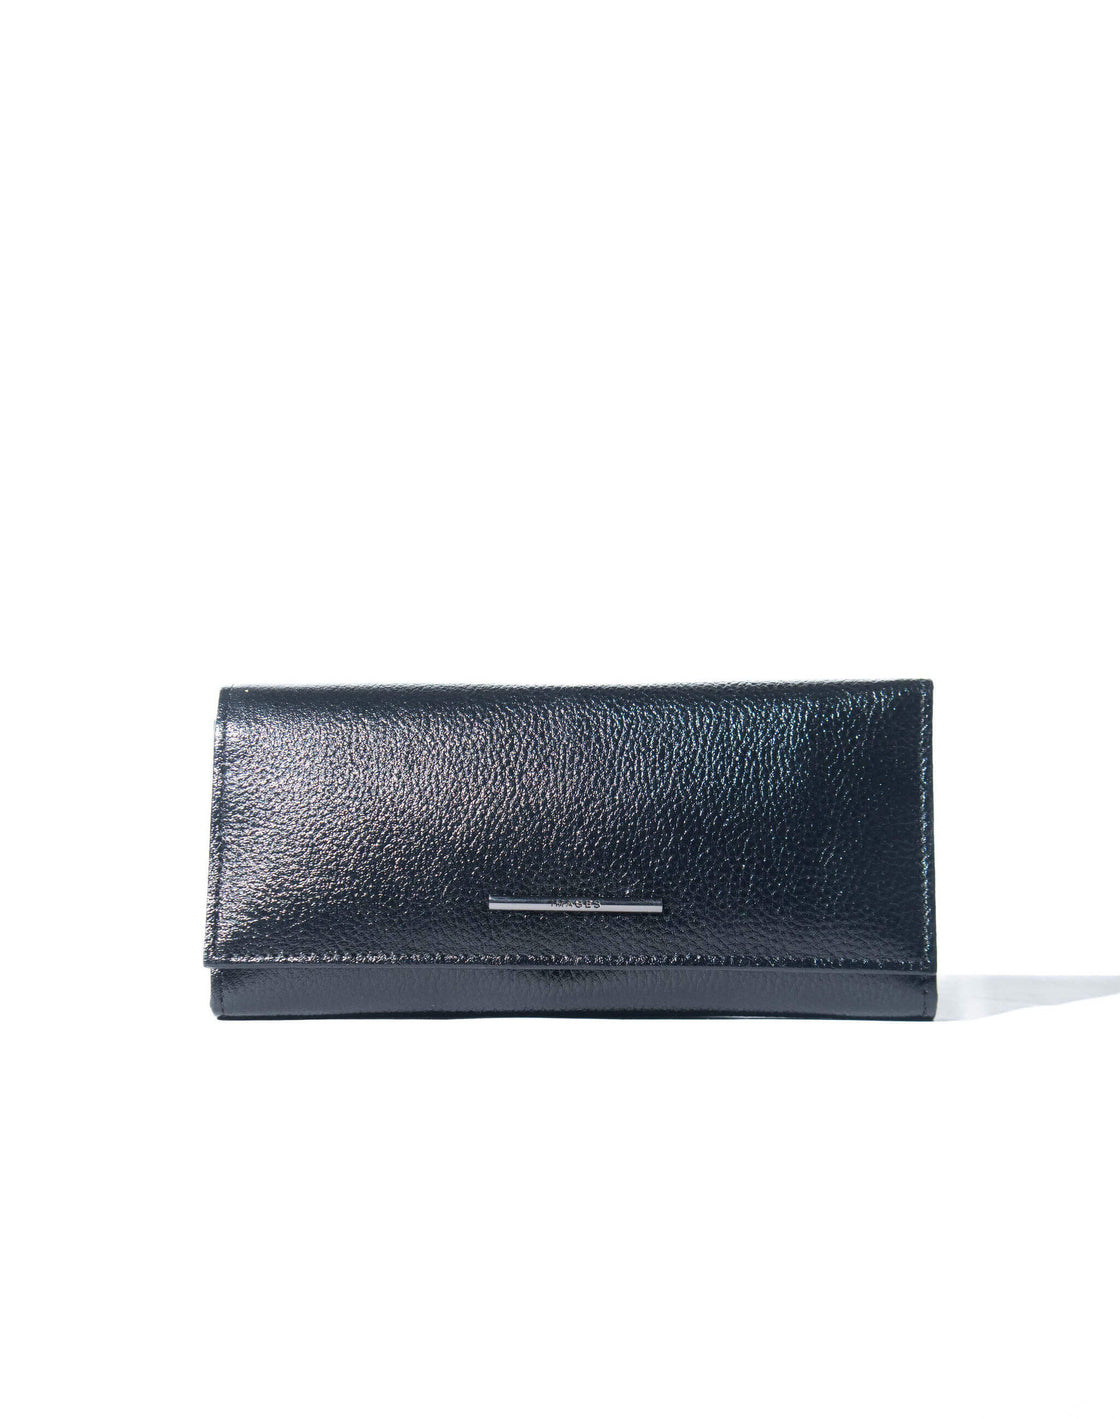 LW1 - Multi Fold Wallet